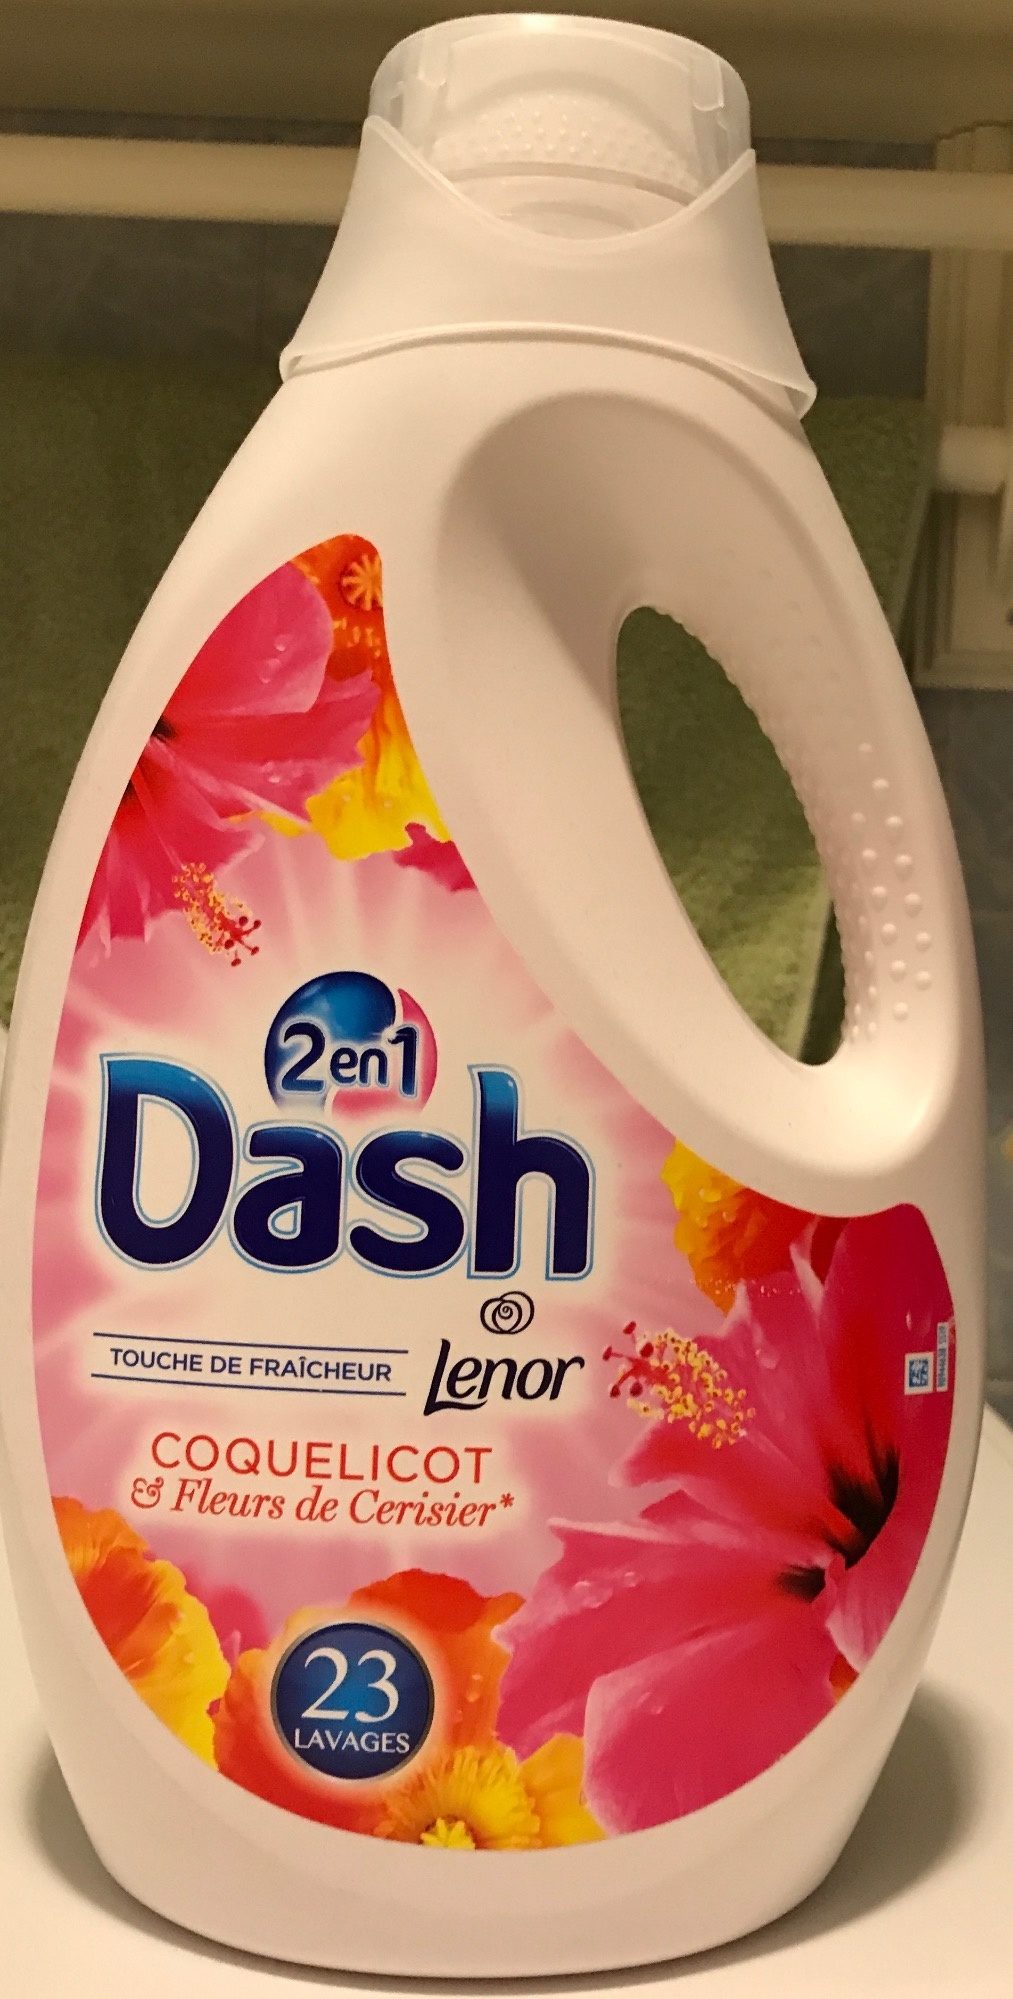 Dash 2 en 1 Touche de Fraîcheur Coquelicot & Fleurs de Cerisier - Produit - fr